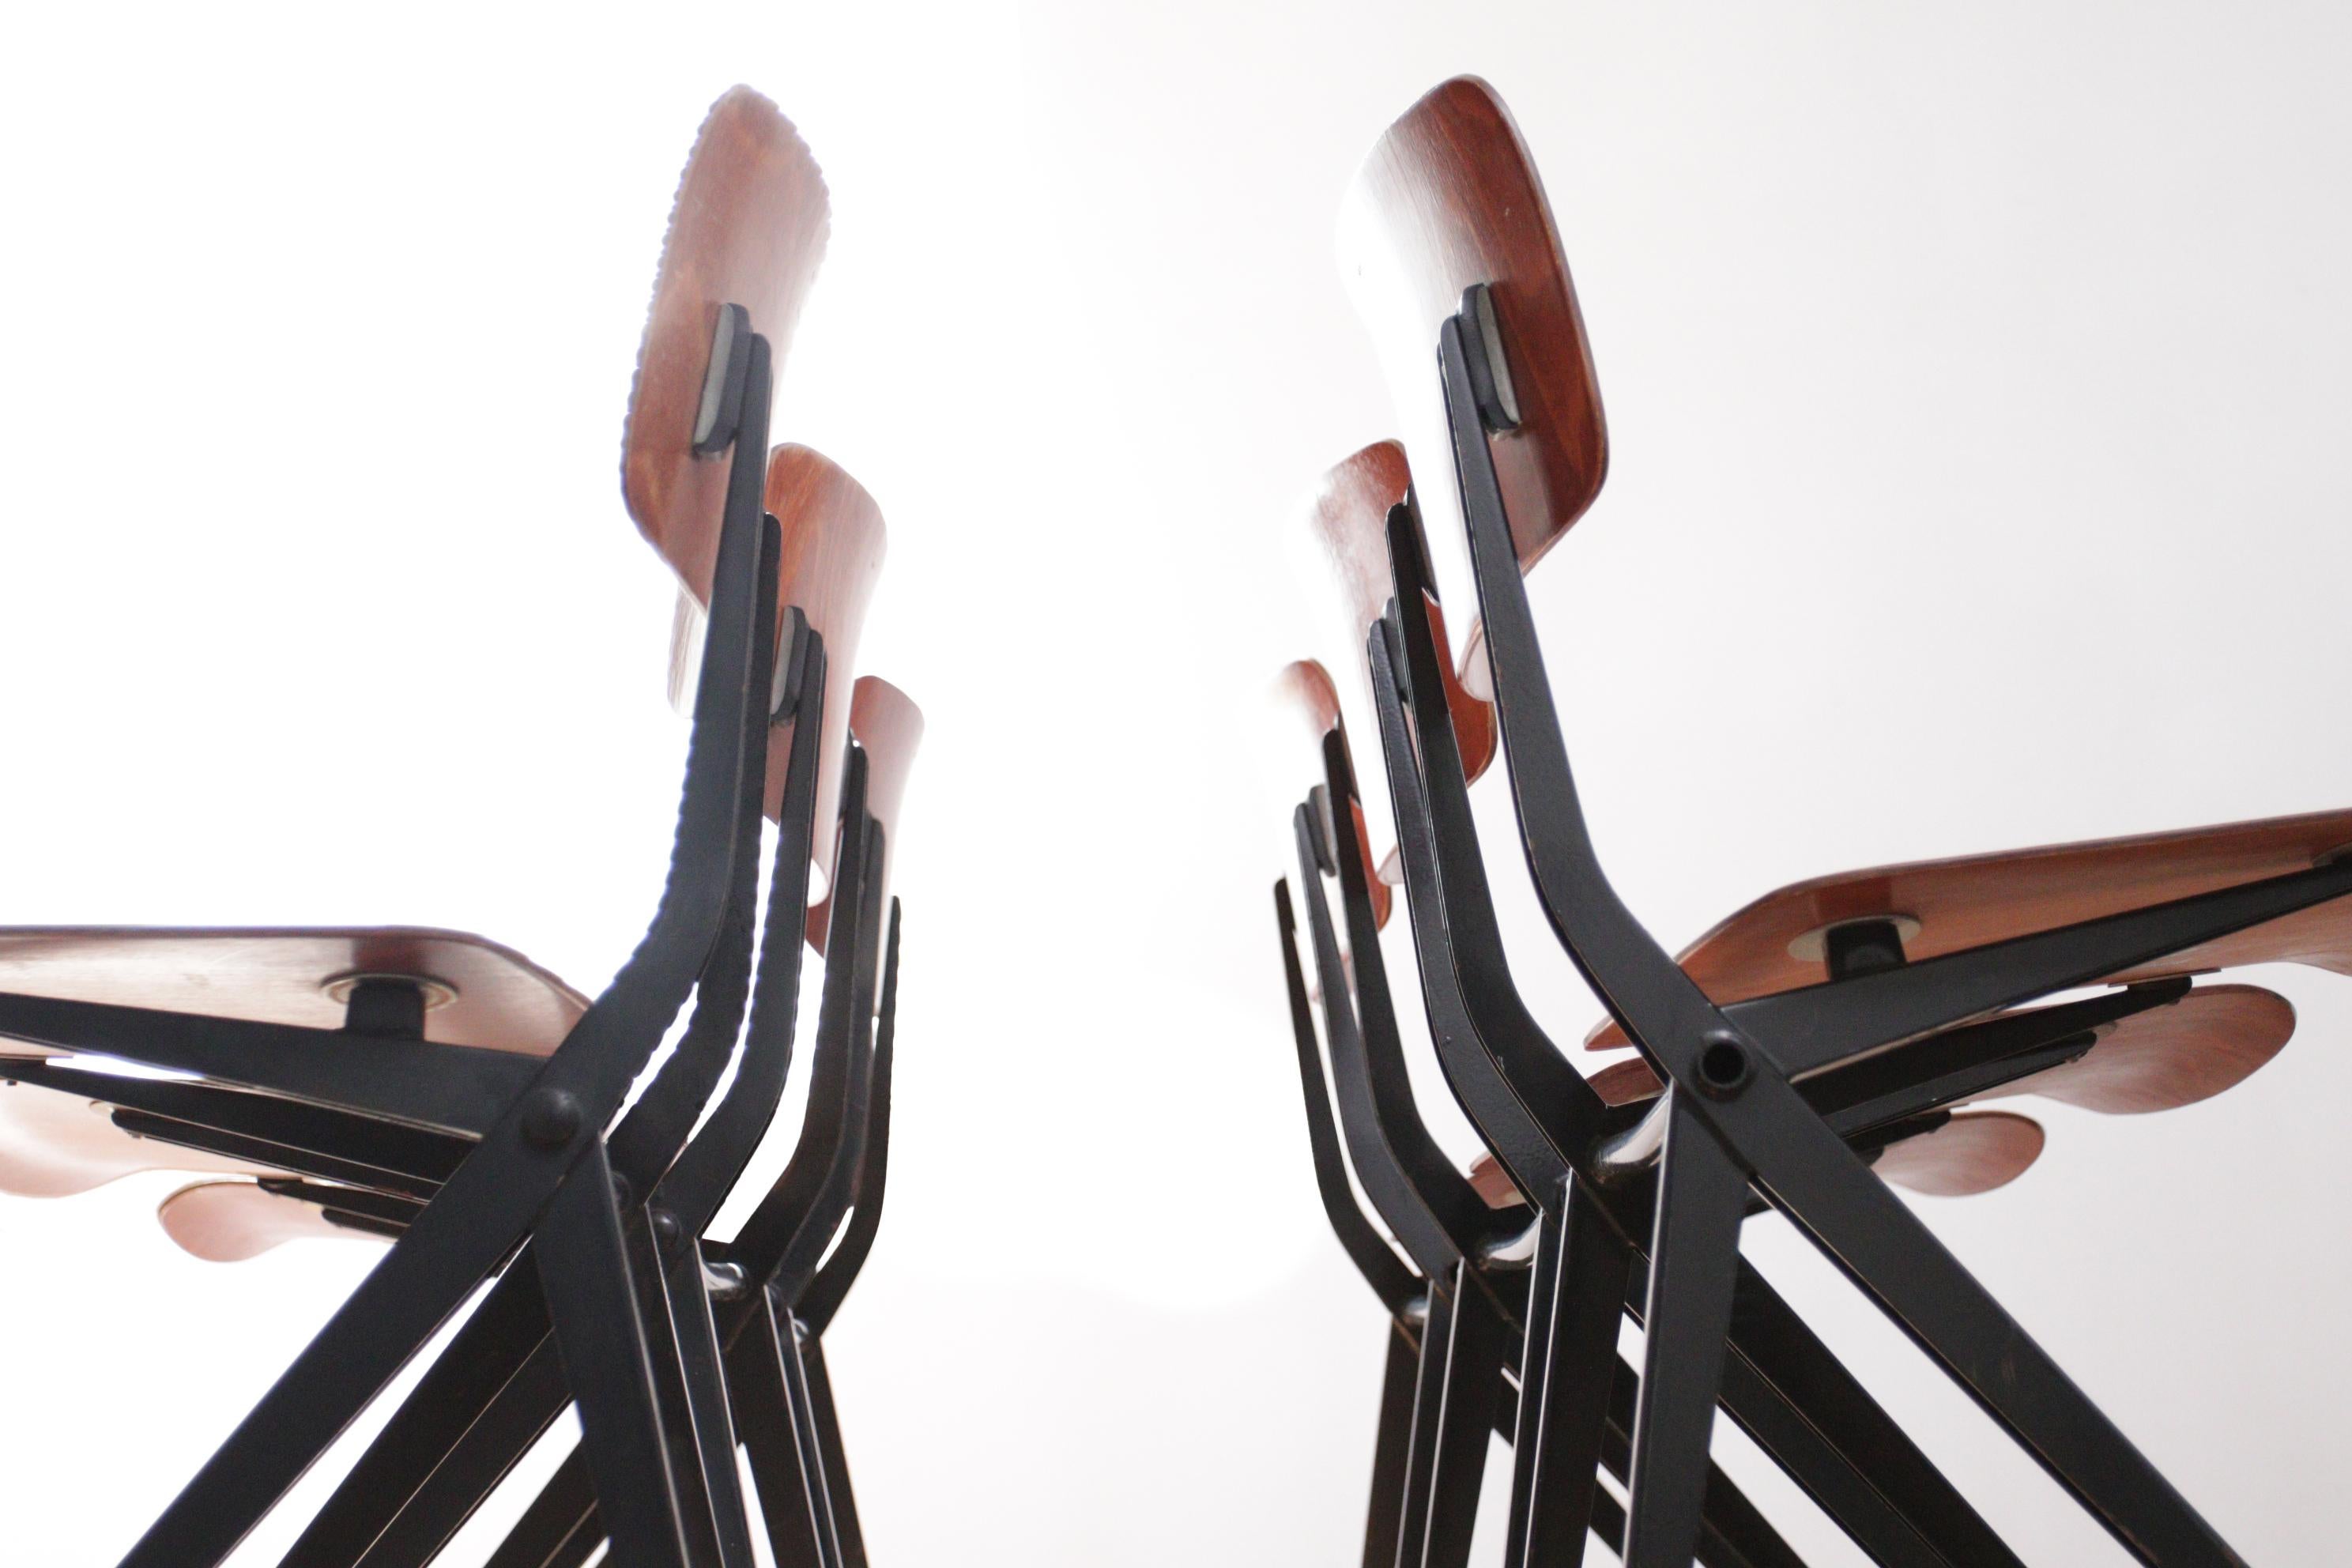 Marko S201 Ynske Kooistra Dining Room Chairs For Sale 4